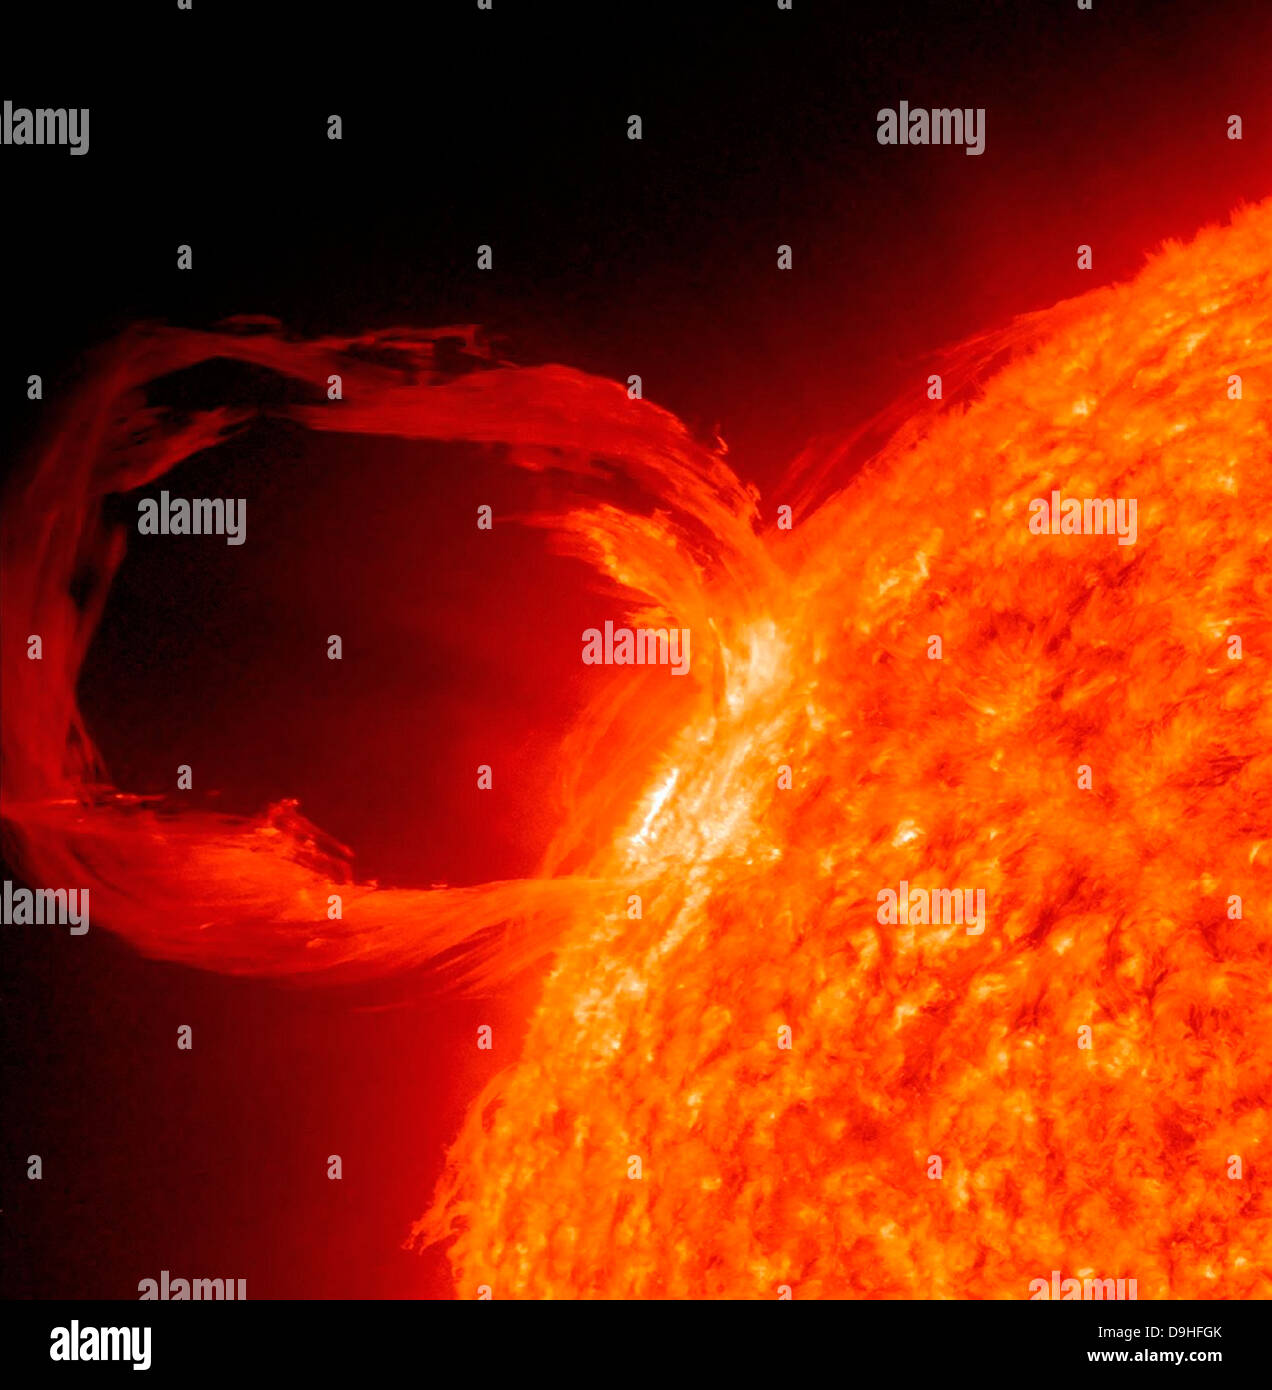 Marzo 30, 2010 - Close-up di un solare preminenza eruttiva come visto in condizioni estreme di luce UV. Foto Stock